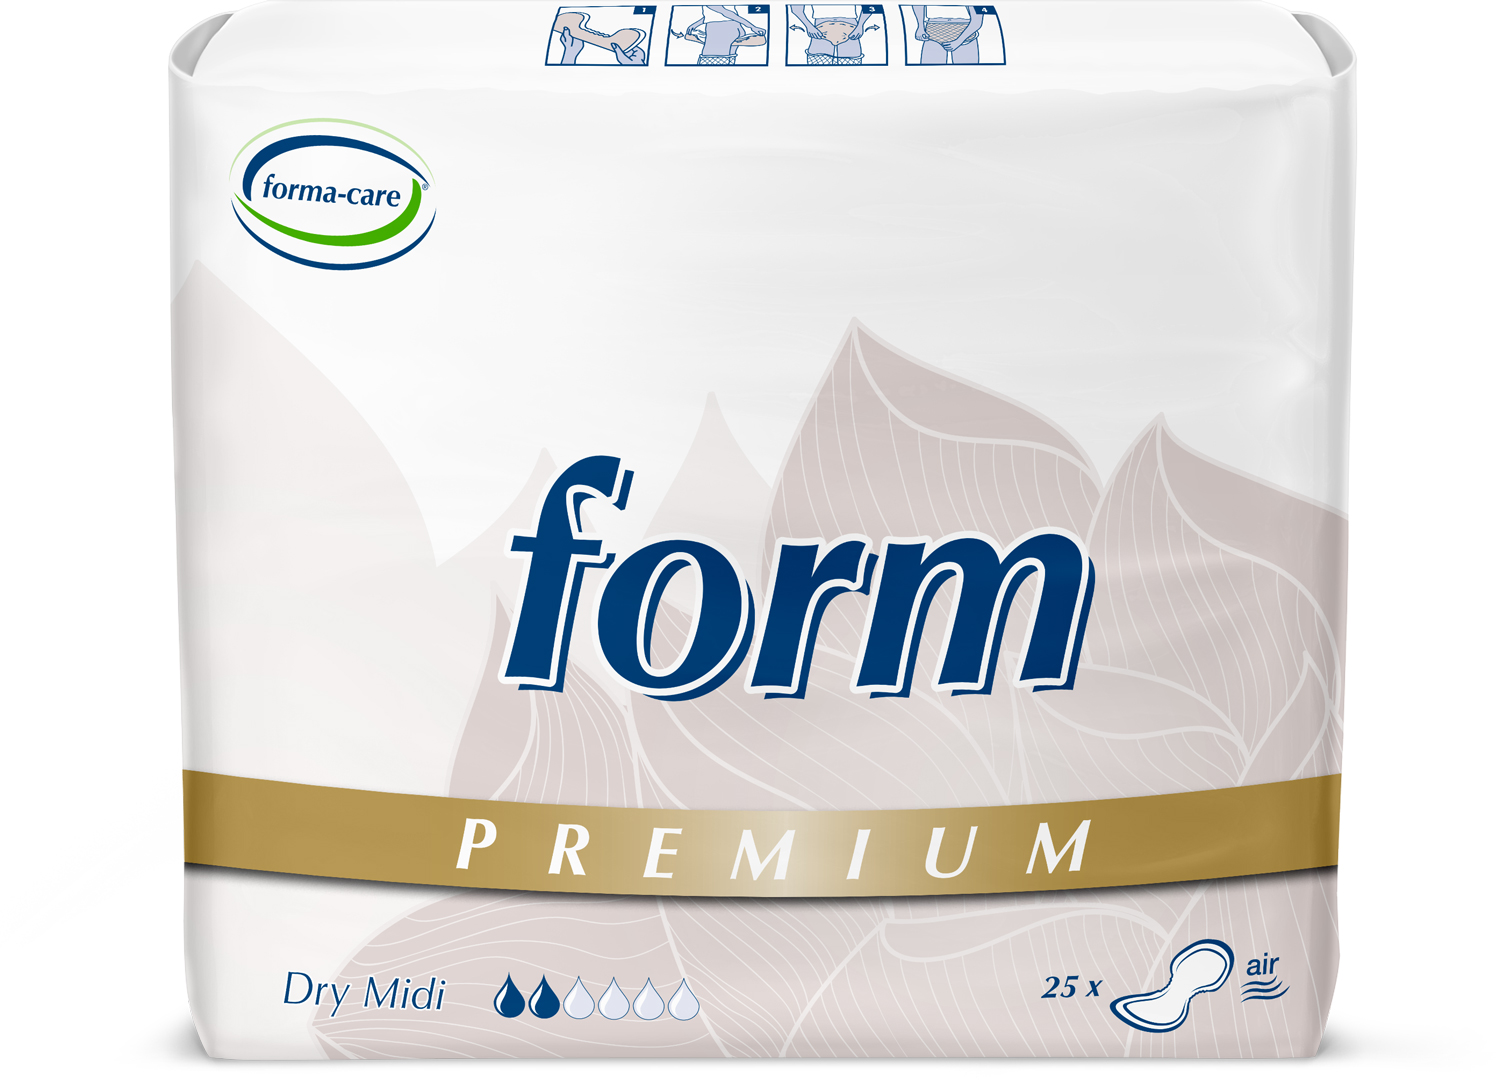 Abbildung eines Beutels der Premium Vorlage forma-care form premium dry, Saugstärke midi